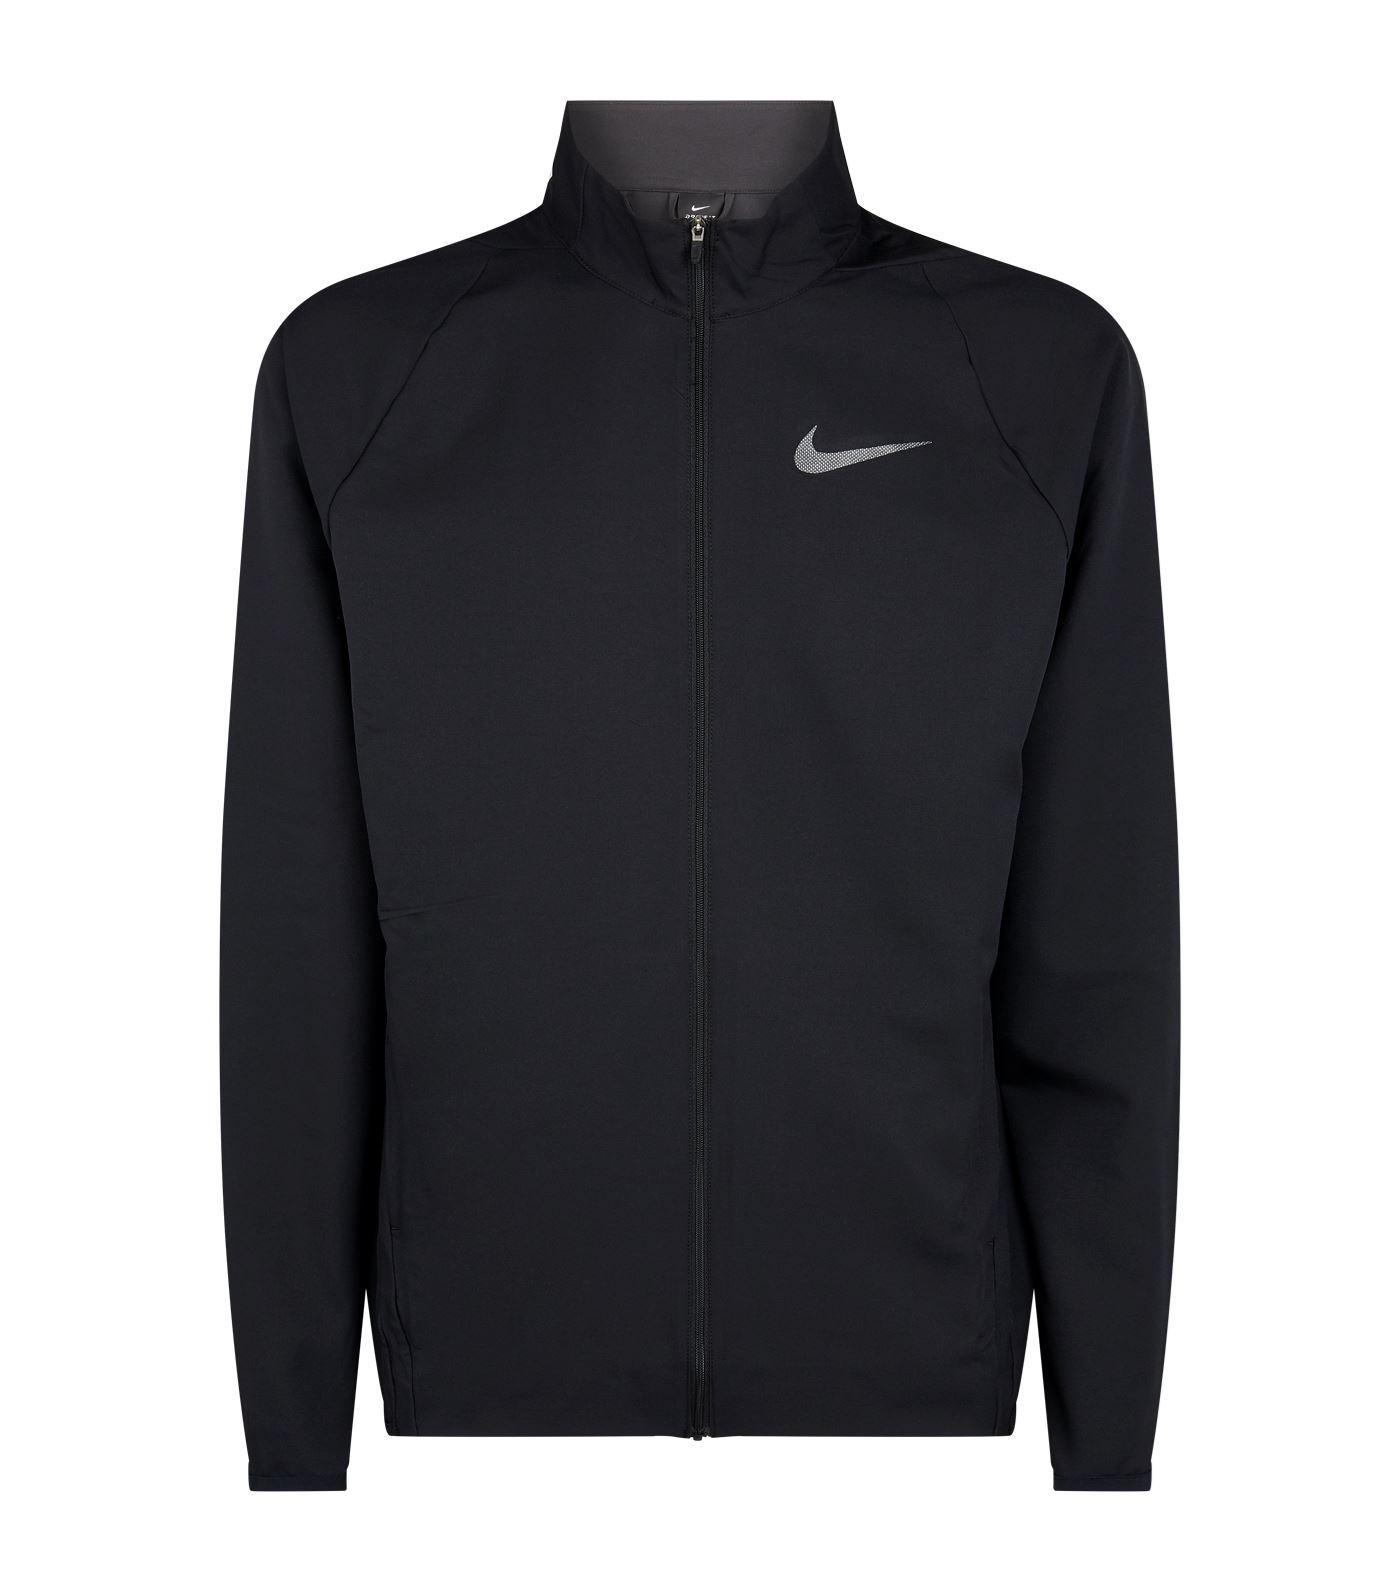 Nike Dri-fit Jacket in Black for Men - Lyst